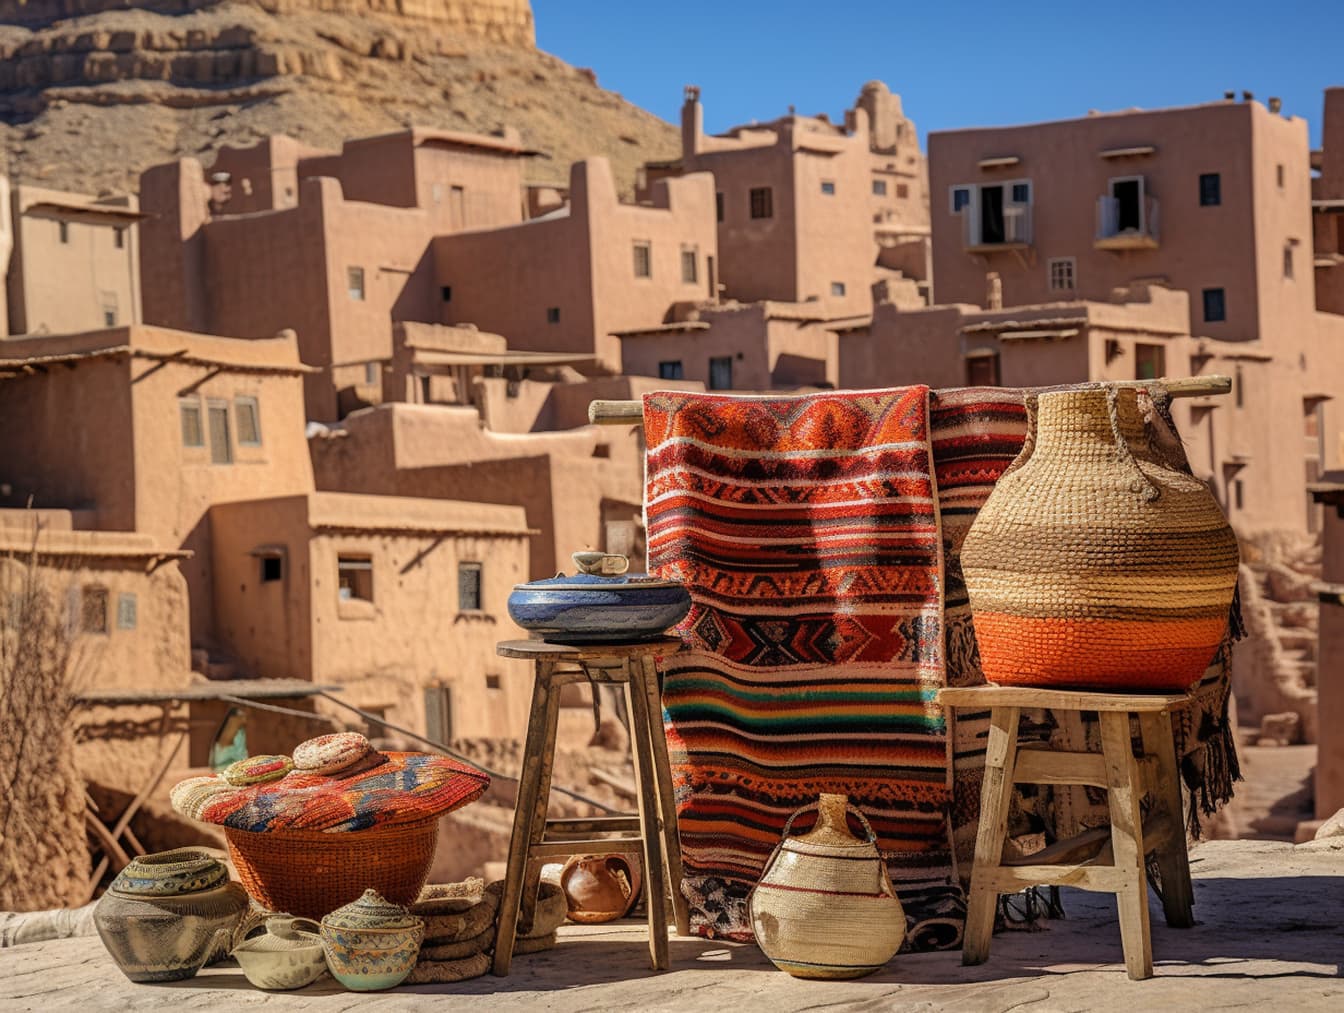 Chợ đường phố ở Morocco với giỏ và đồ gốm